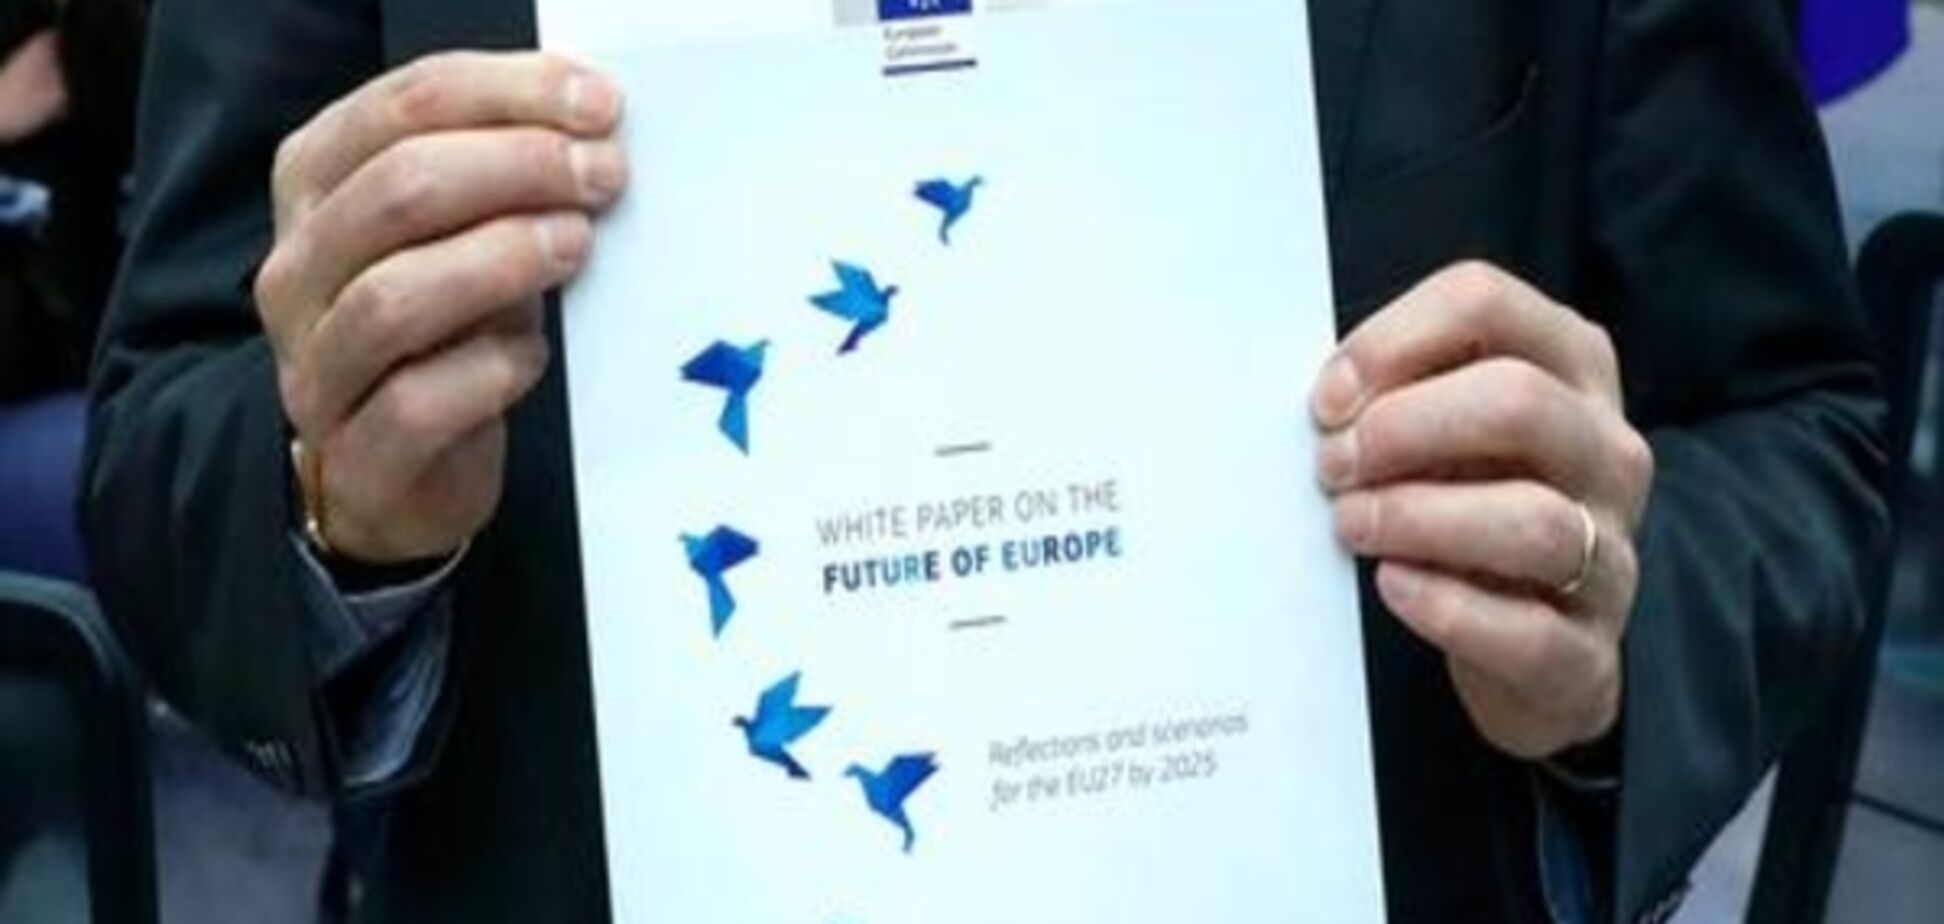 Єврокомісія запропонувала п'ять сценаріїв розвитку ЄС після Brexit